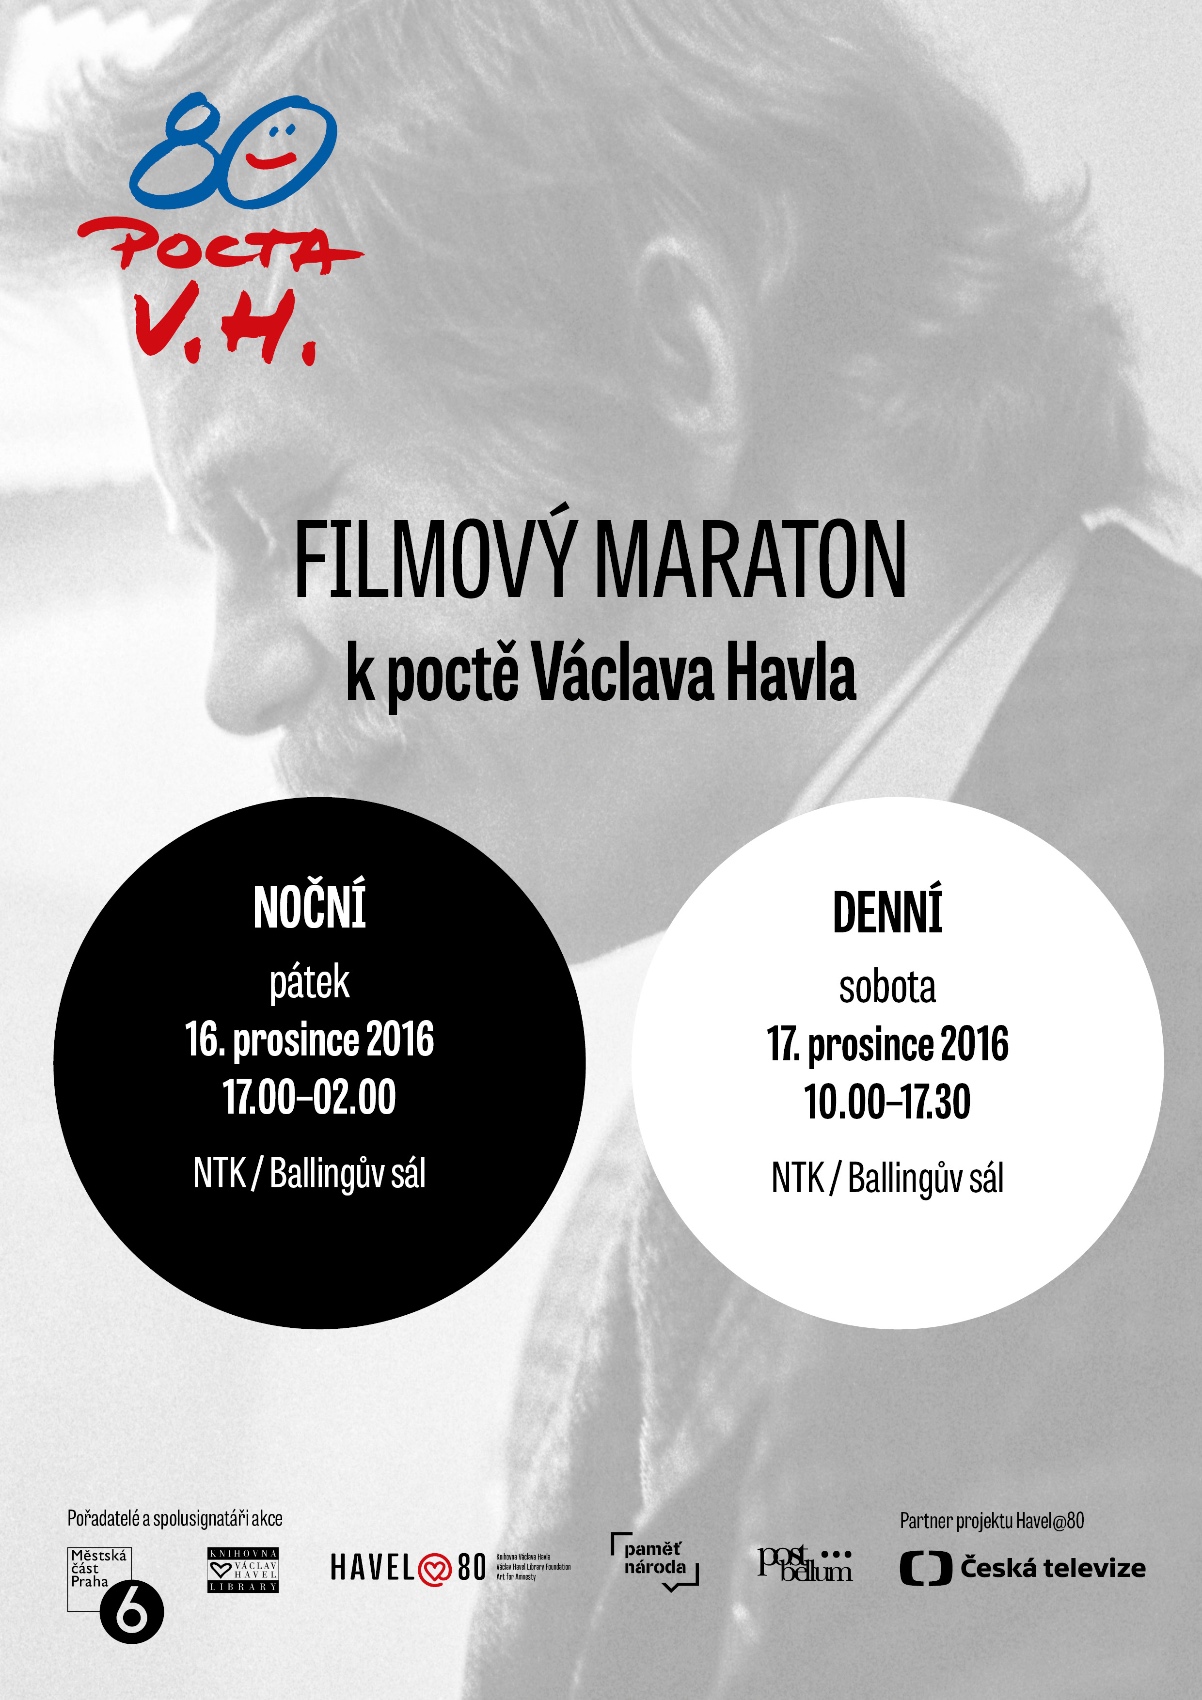 Filmový maraton k poctě Václava Havla